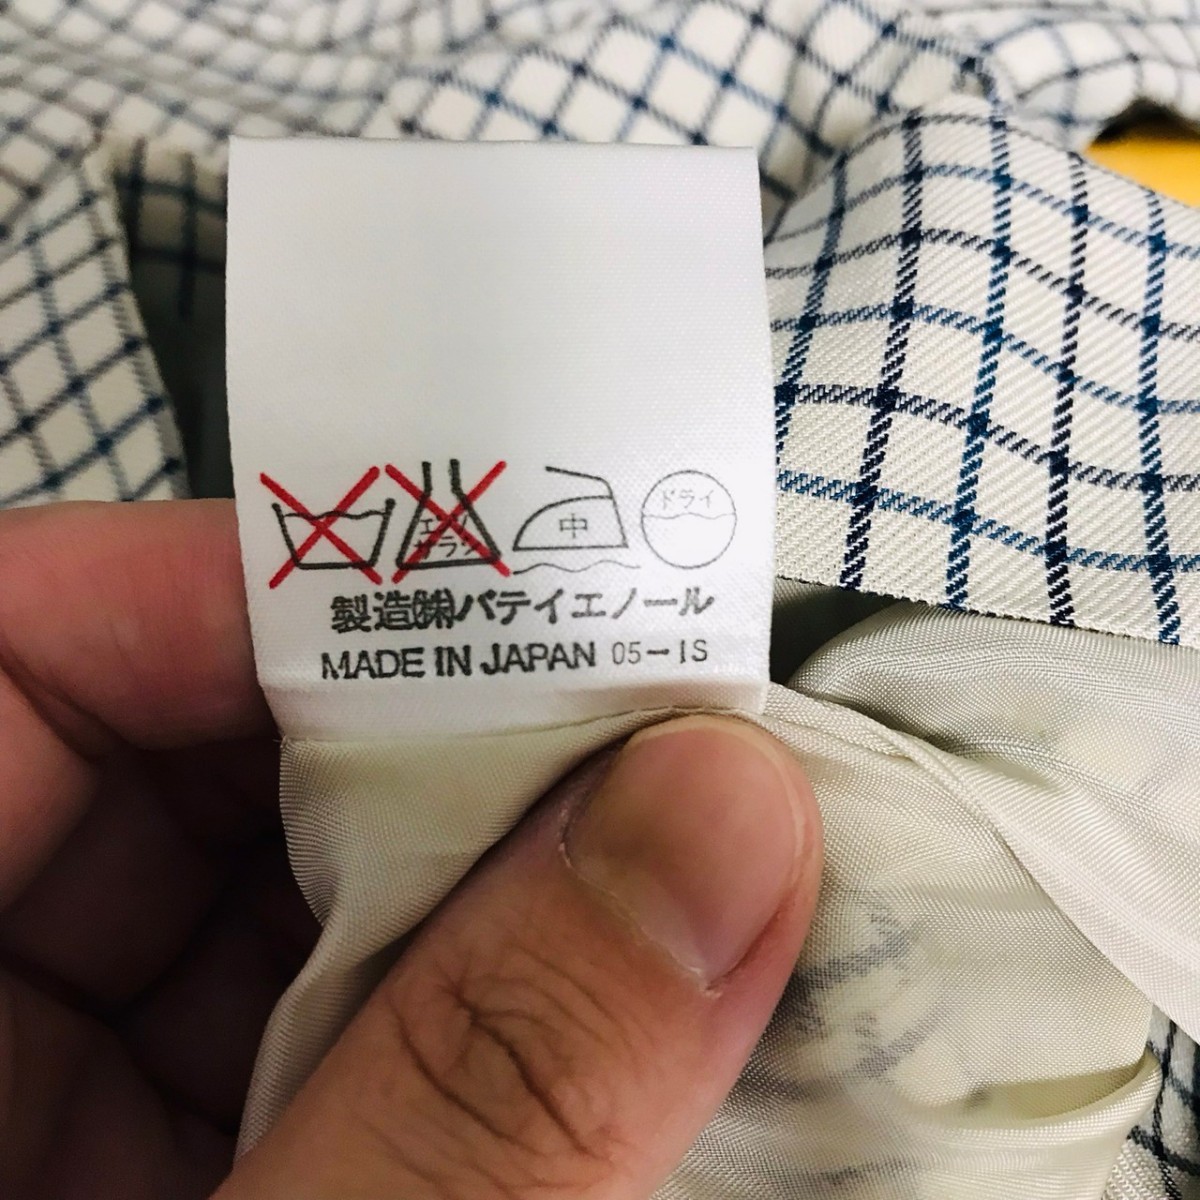 H3797dL  сделано в Японии  4℃ ...  размер  M  установка   костюм   юбочный костюм   белый × голубой ... цвет  пиджак   mini  юбка  